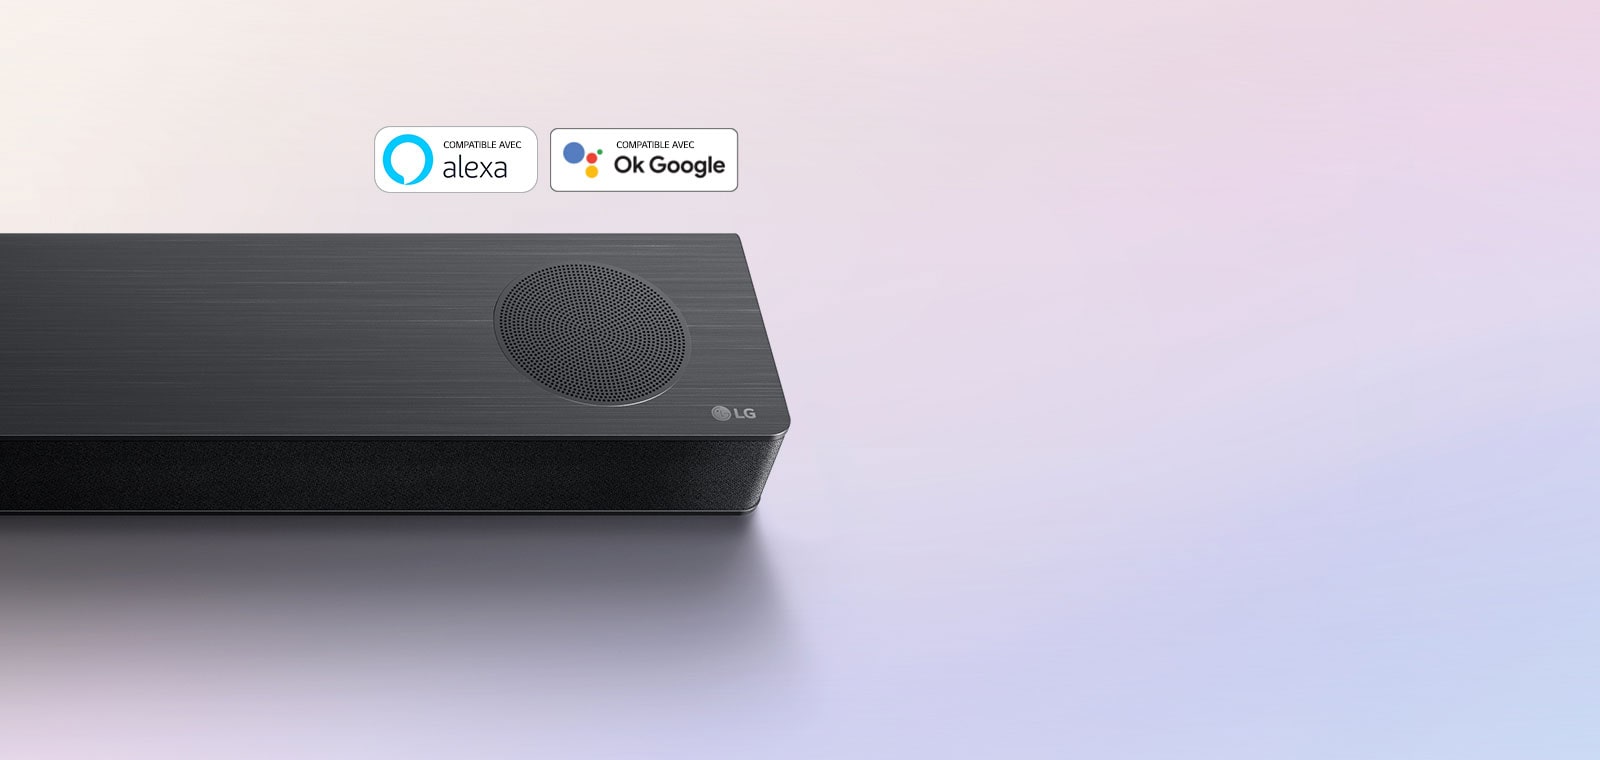 La barre de son LG est installée au sol, affichant le logo LG dans le coin droit de la barre de son. Le logo Alexa et les logos OK GOOGLE sont placés sur la barre de son.